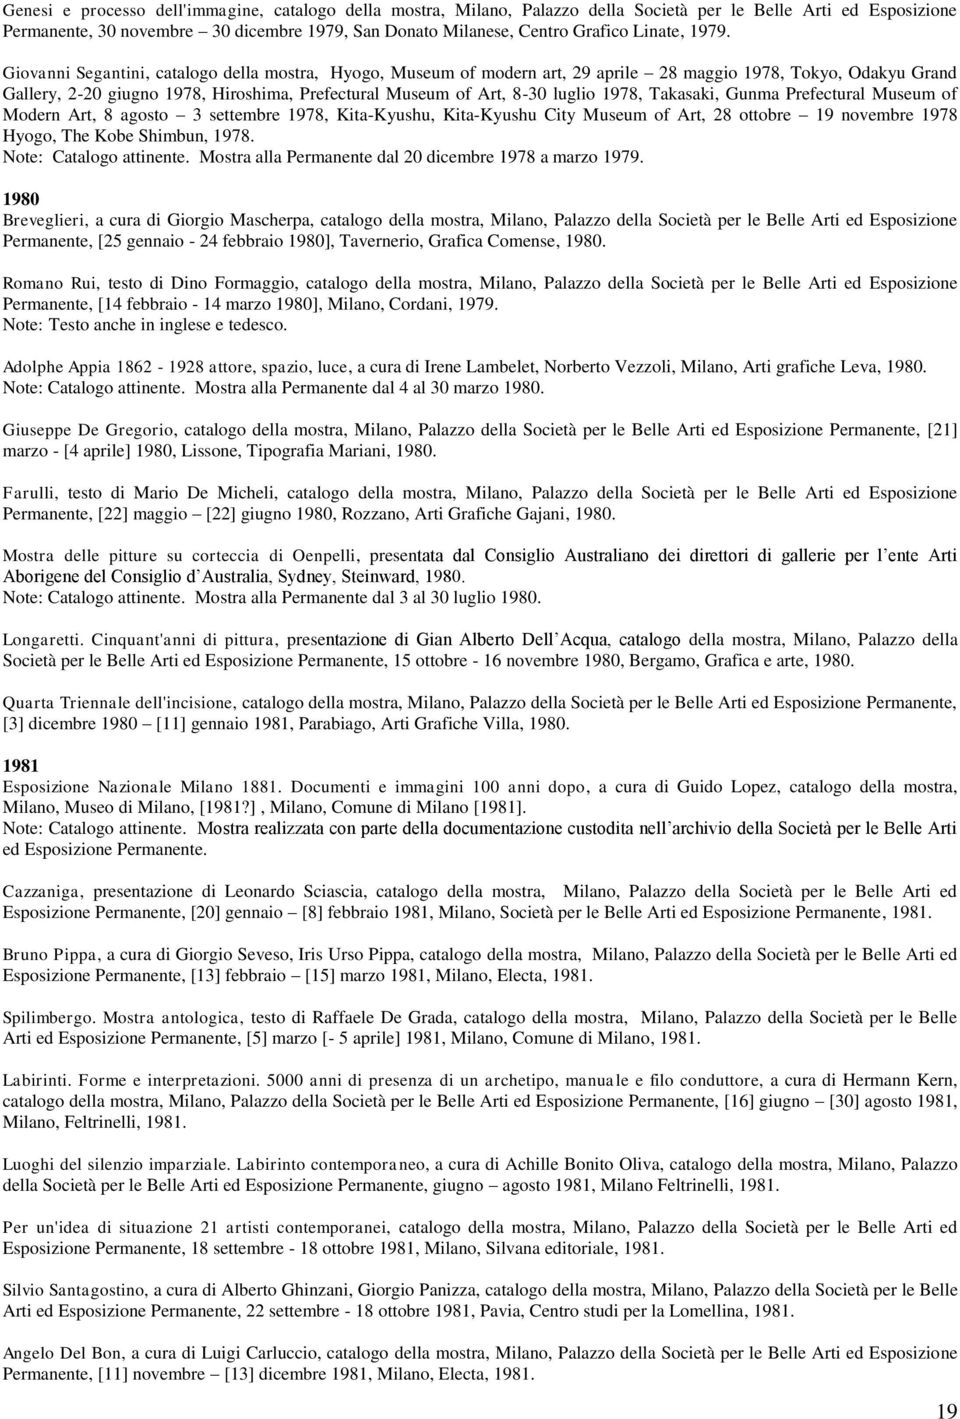 Giovanni Segantini, catalogo della mostra, Hyogo, Museum of modern art, 29 aprile 28 maggio 1978, Tokyo, Odakyu Grand Gallery, 2-20 giugno 1978, Hiroshima, Prefectural Museum of Art, 8-30 luglio